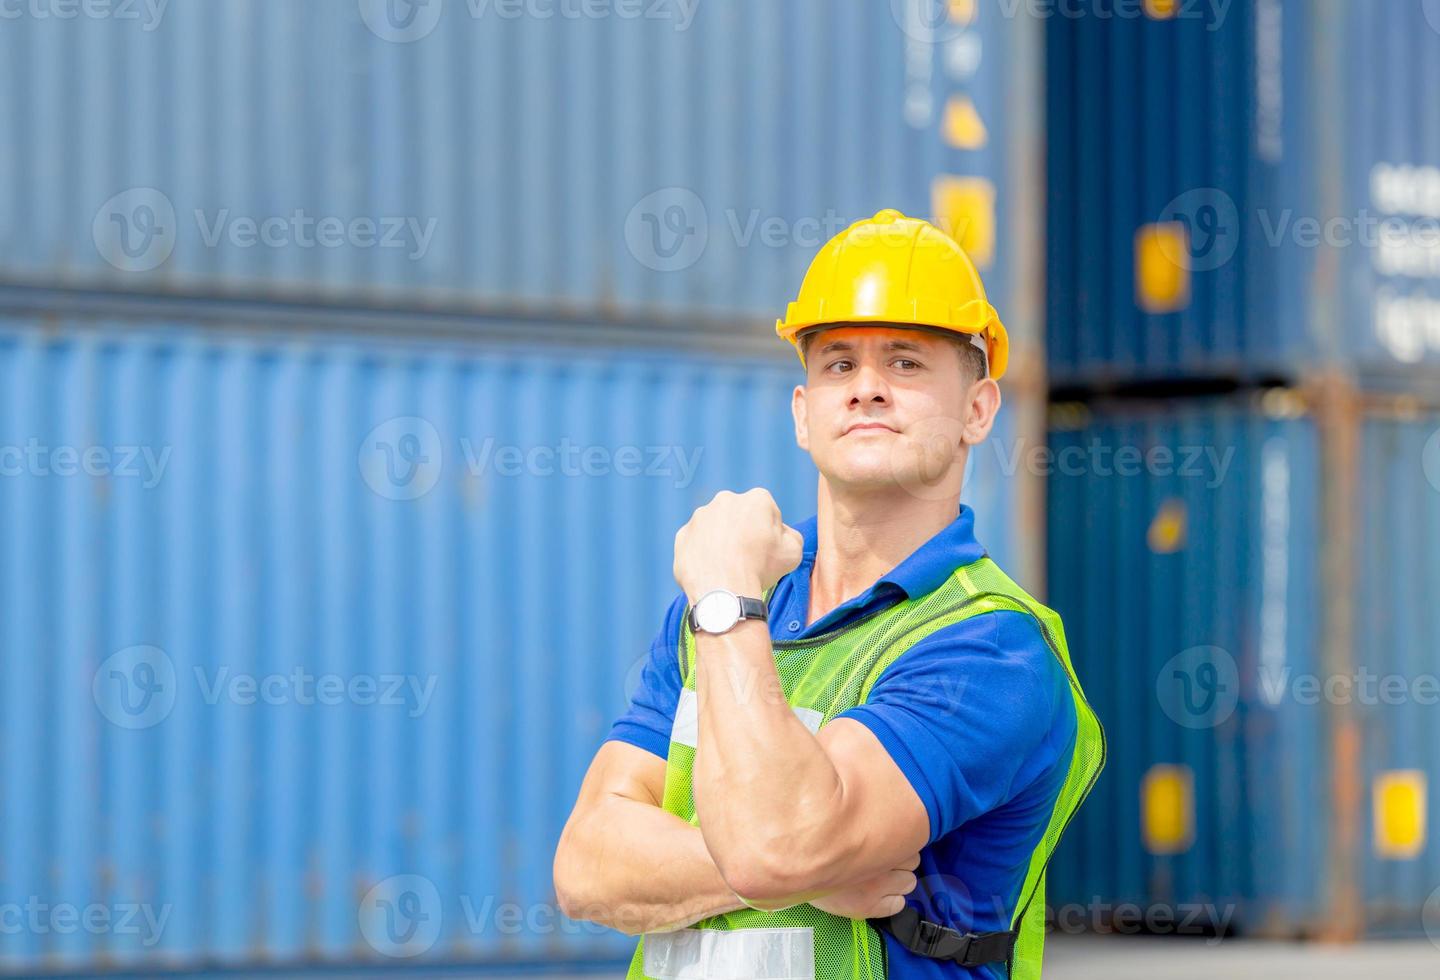 glücksvorarbeiter im bauarbeiterhelm zeigen starke armmuskeln bei der containerladung foto